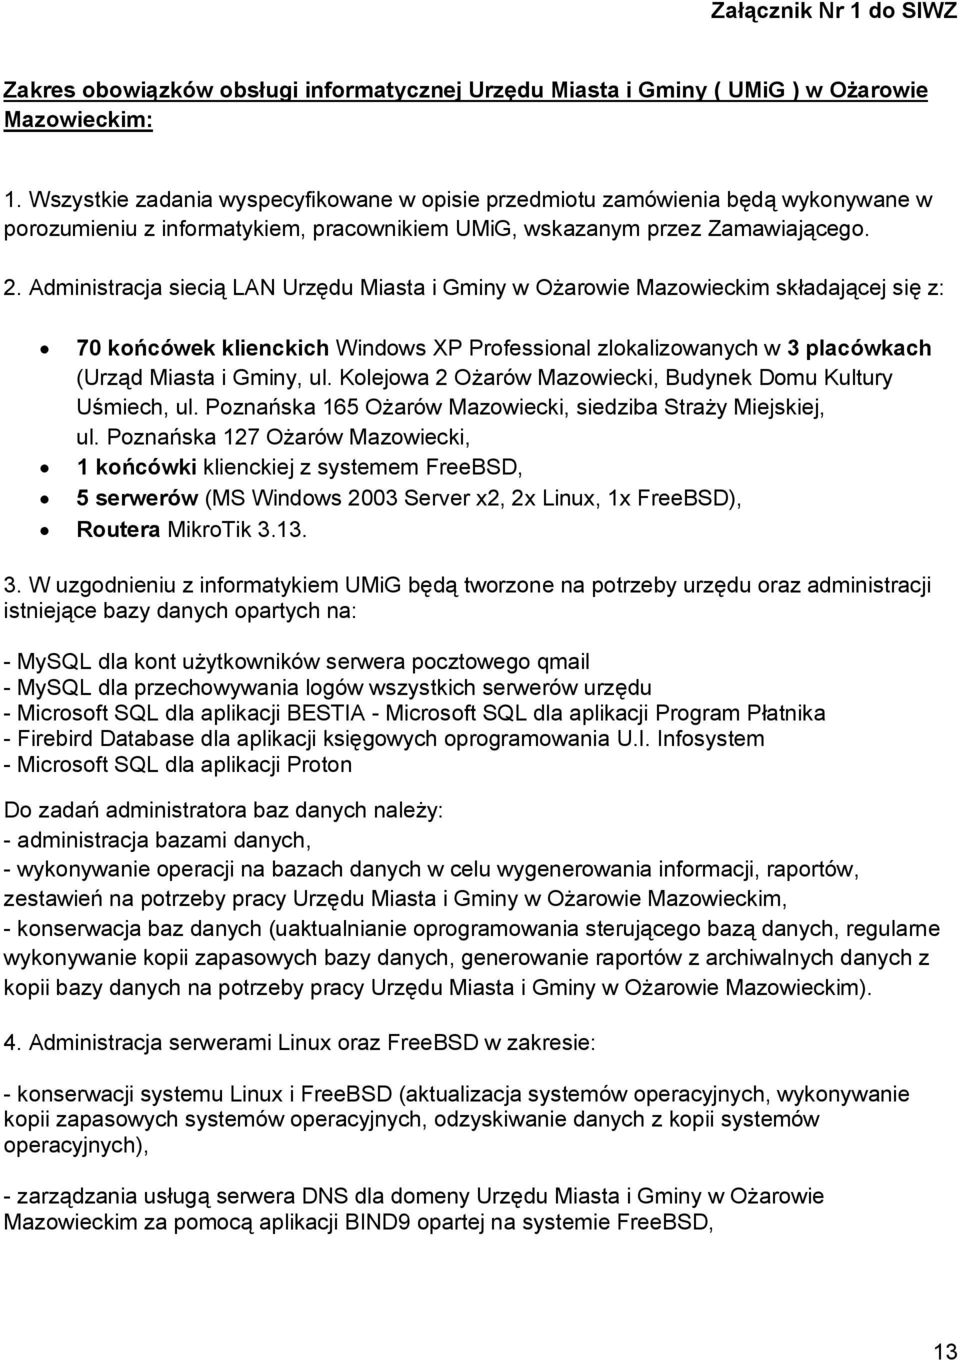 Administracja siecią LAN Urzędu Miasta i Gminy w Ożarowie Mazowieckim składającej się z: 70 końcówek klienckich Windows XP Professional zlokalizowanych w 3 placówkach (Urząd Miasta i Gminy, ul.